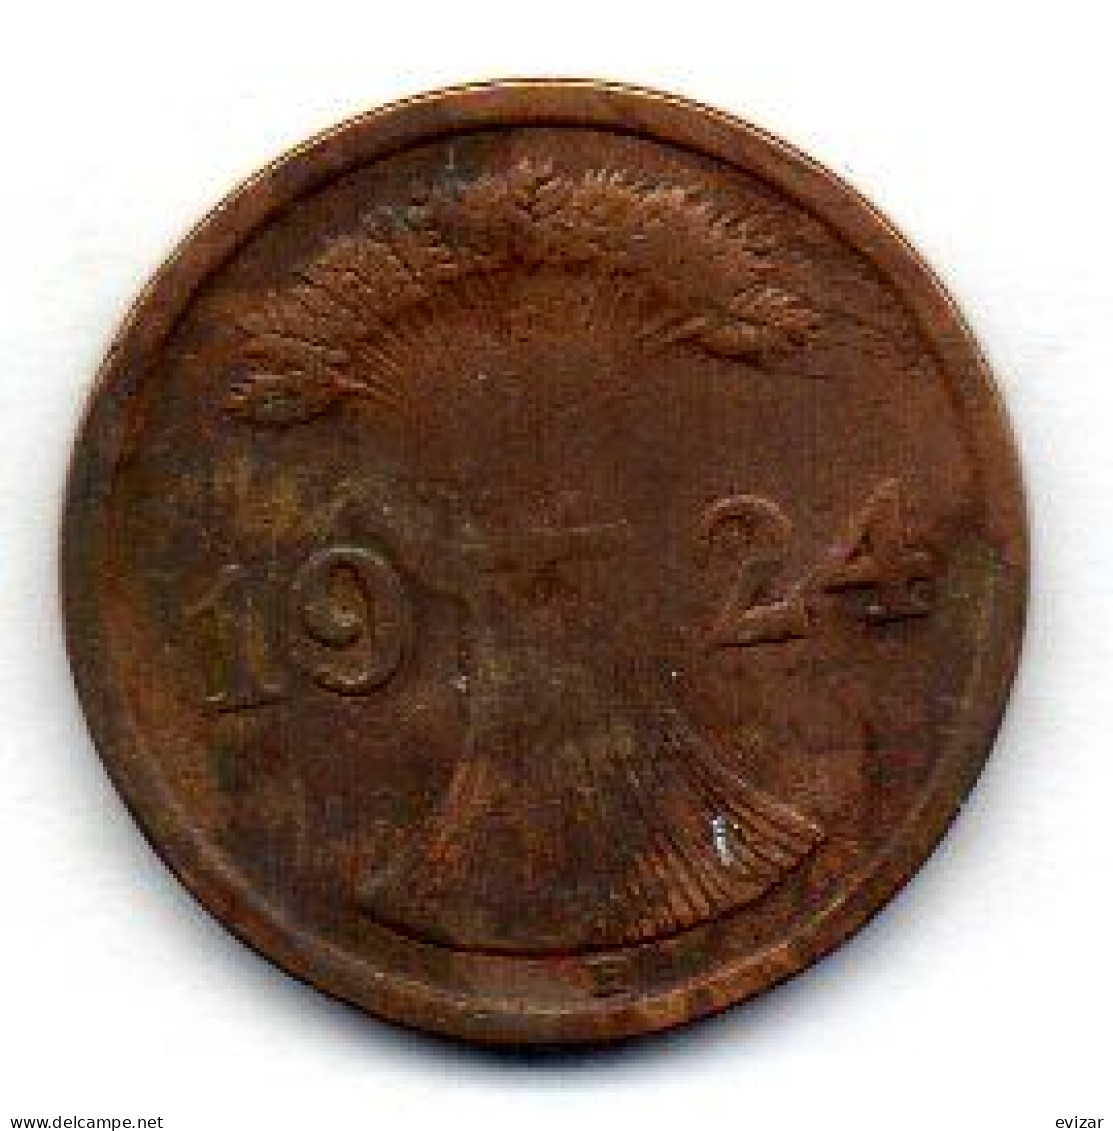 GERMANY - WEIMAR REPUBLIC, 2 Reichs Pfennig, Bronze, Year 1924-E, KM # 38 - 2 Rentenpfennig & 2 Reichspfennig